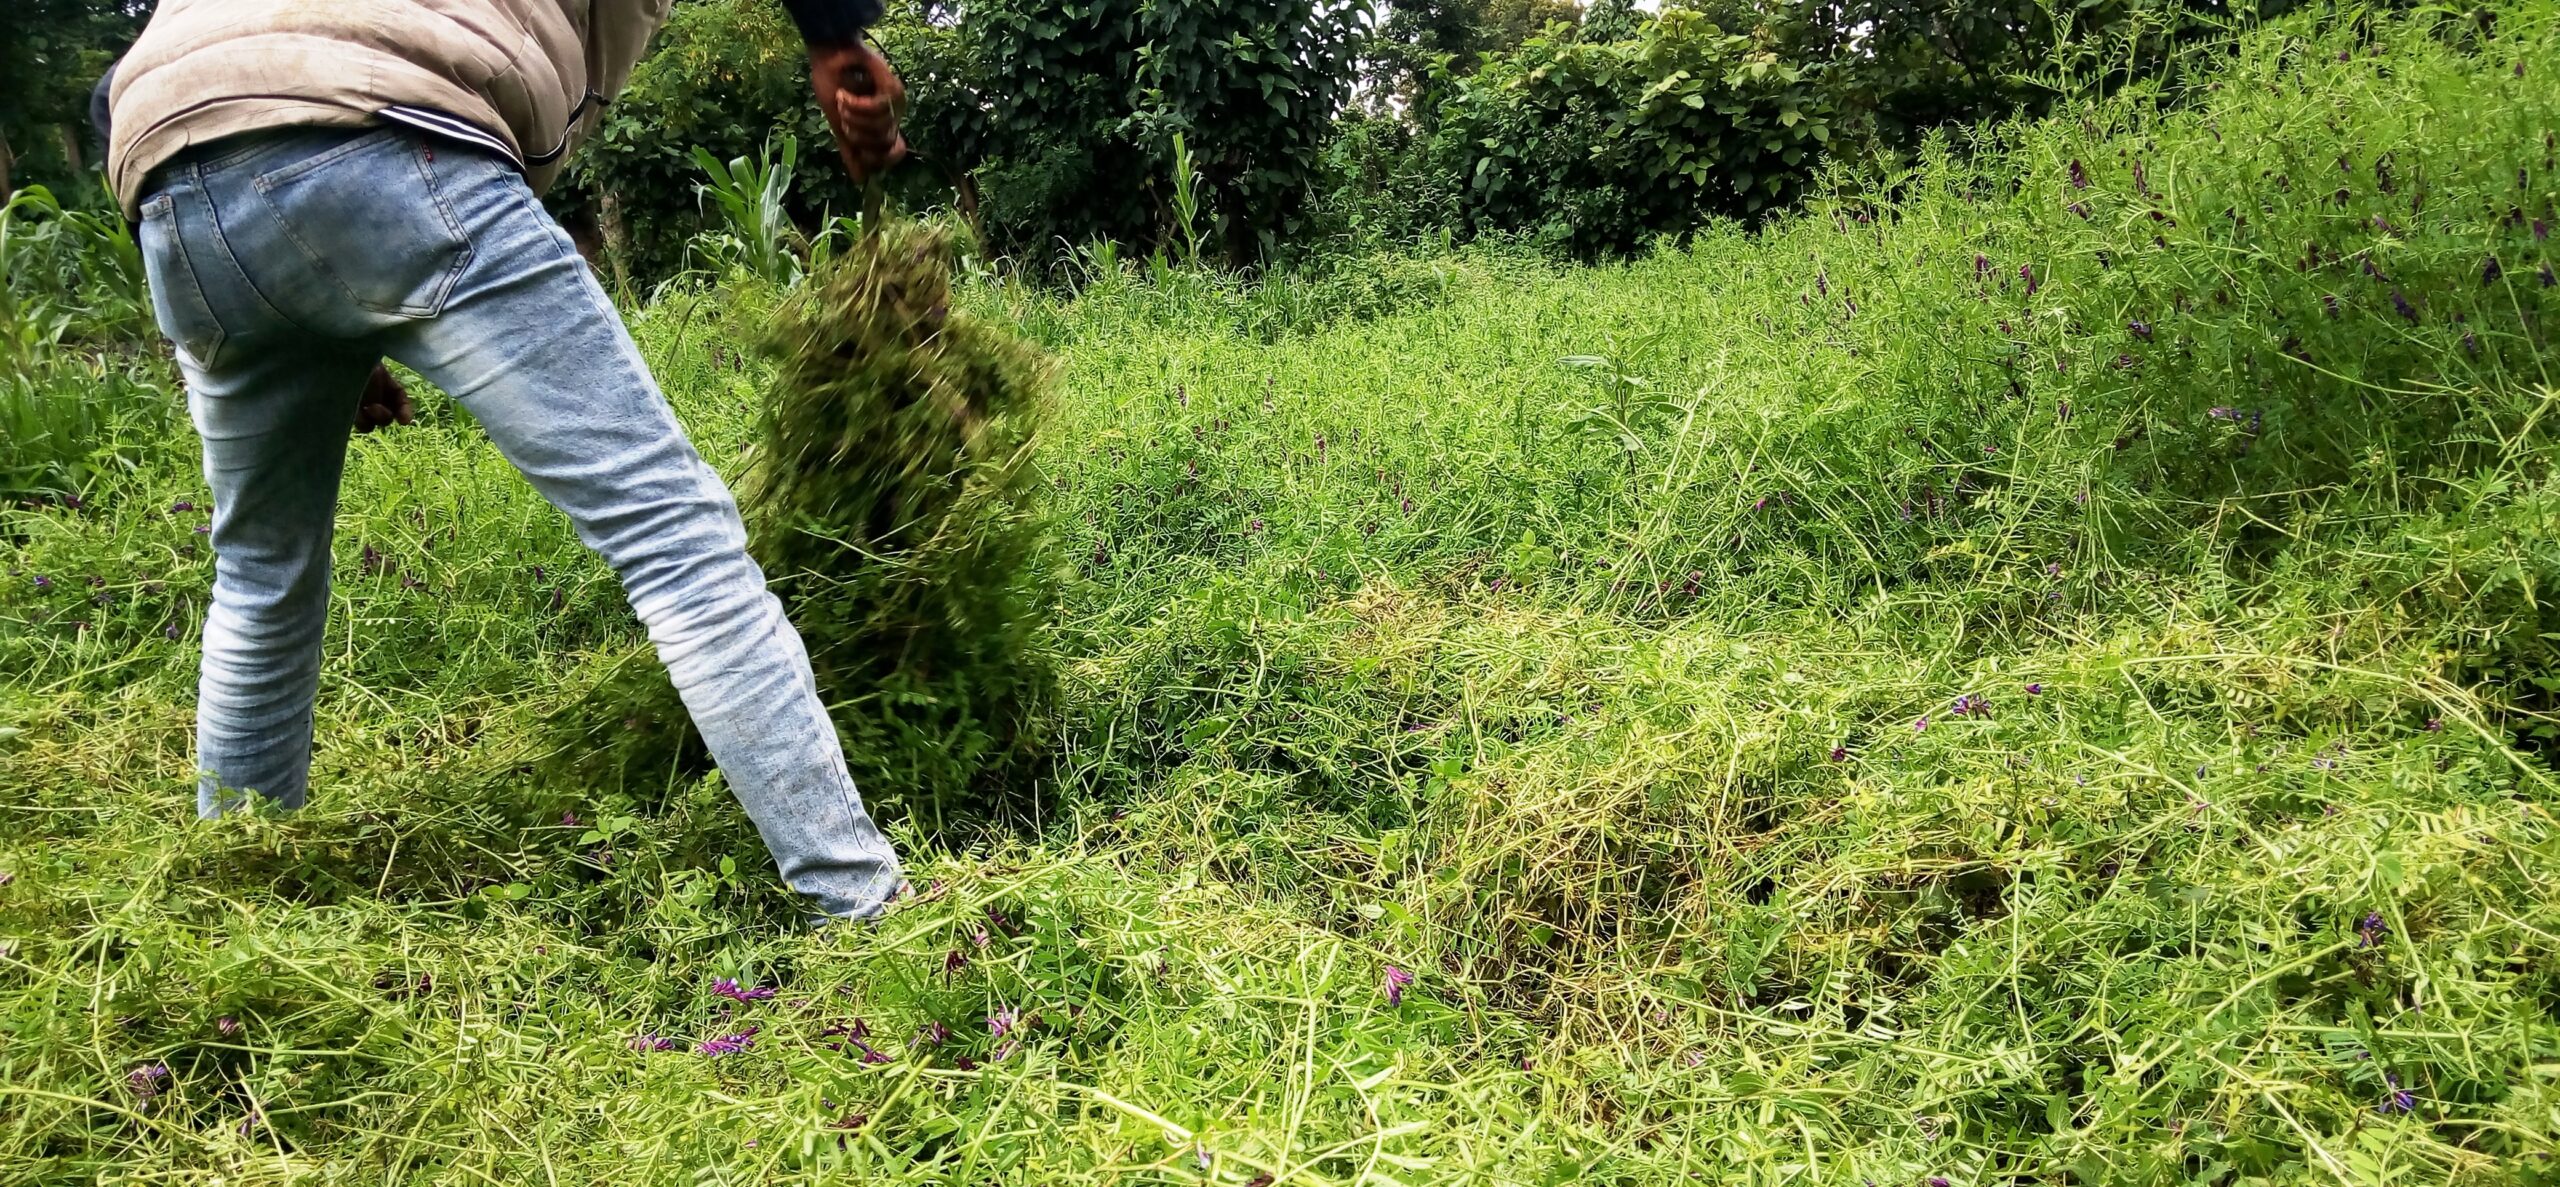 Green manure practices to improve soil fertility, mountainous regions of southern Ethiopia